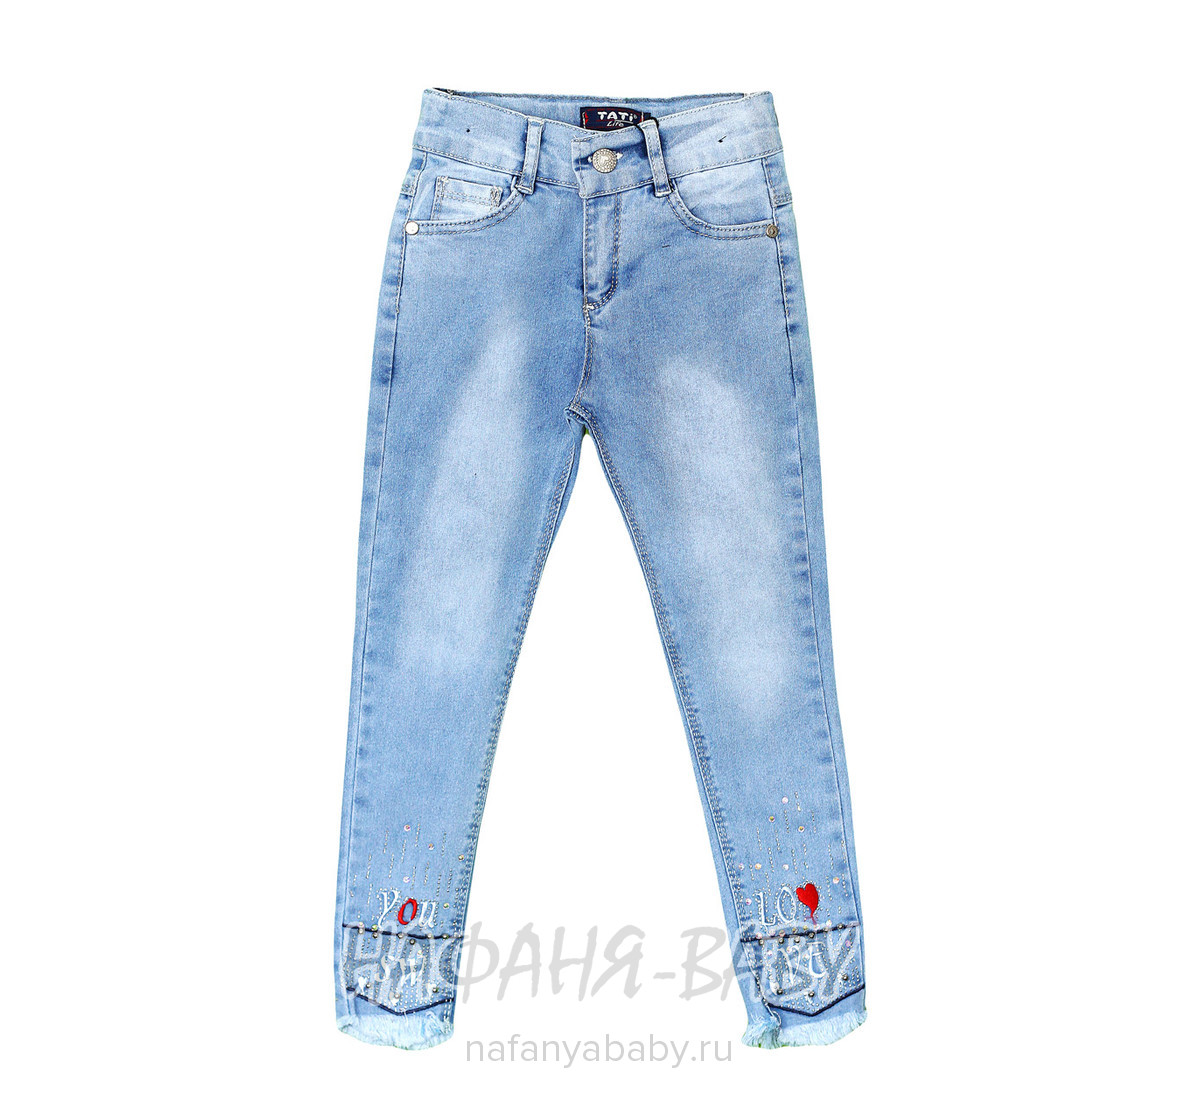 Подростковые джинсы TATI Jeans арт: 3055, 10-15 лет, 5-9 лет, оптом Турция